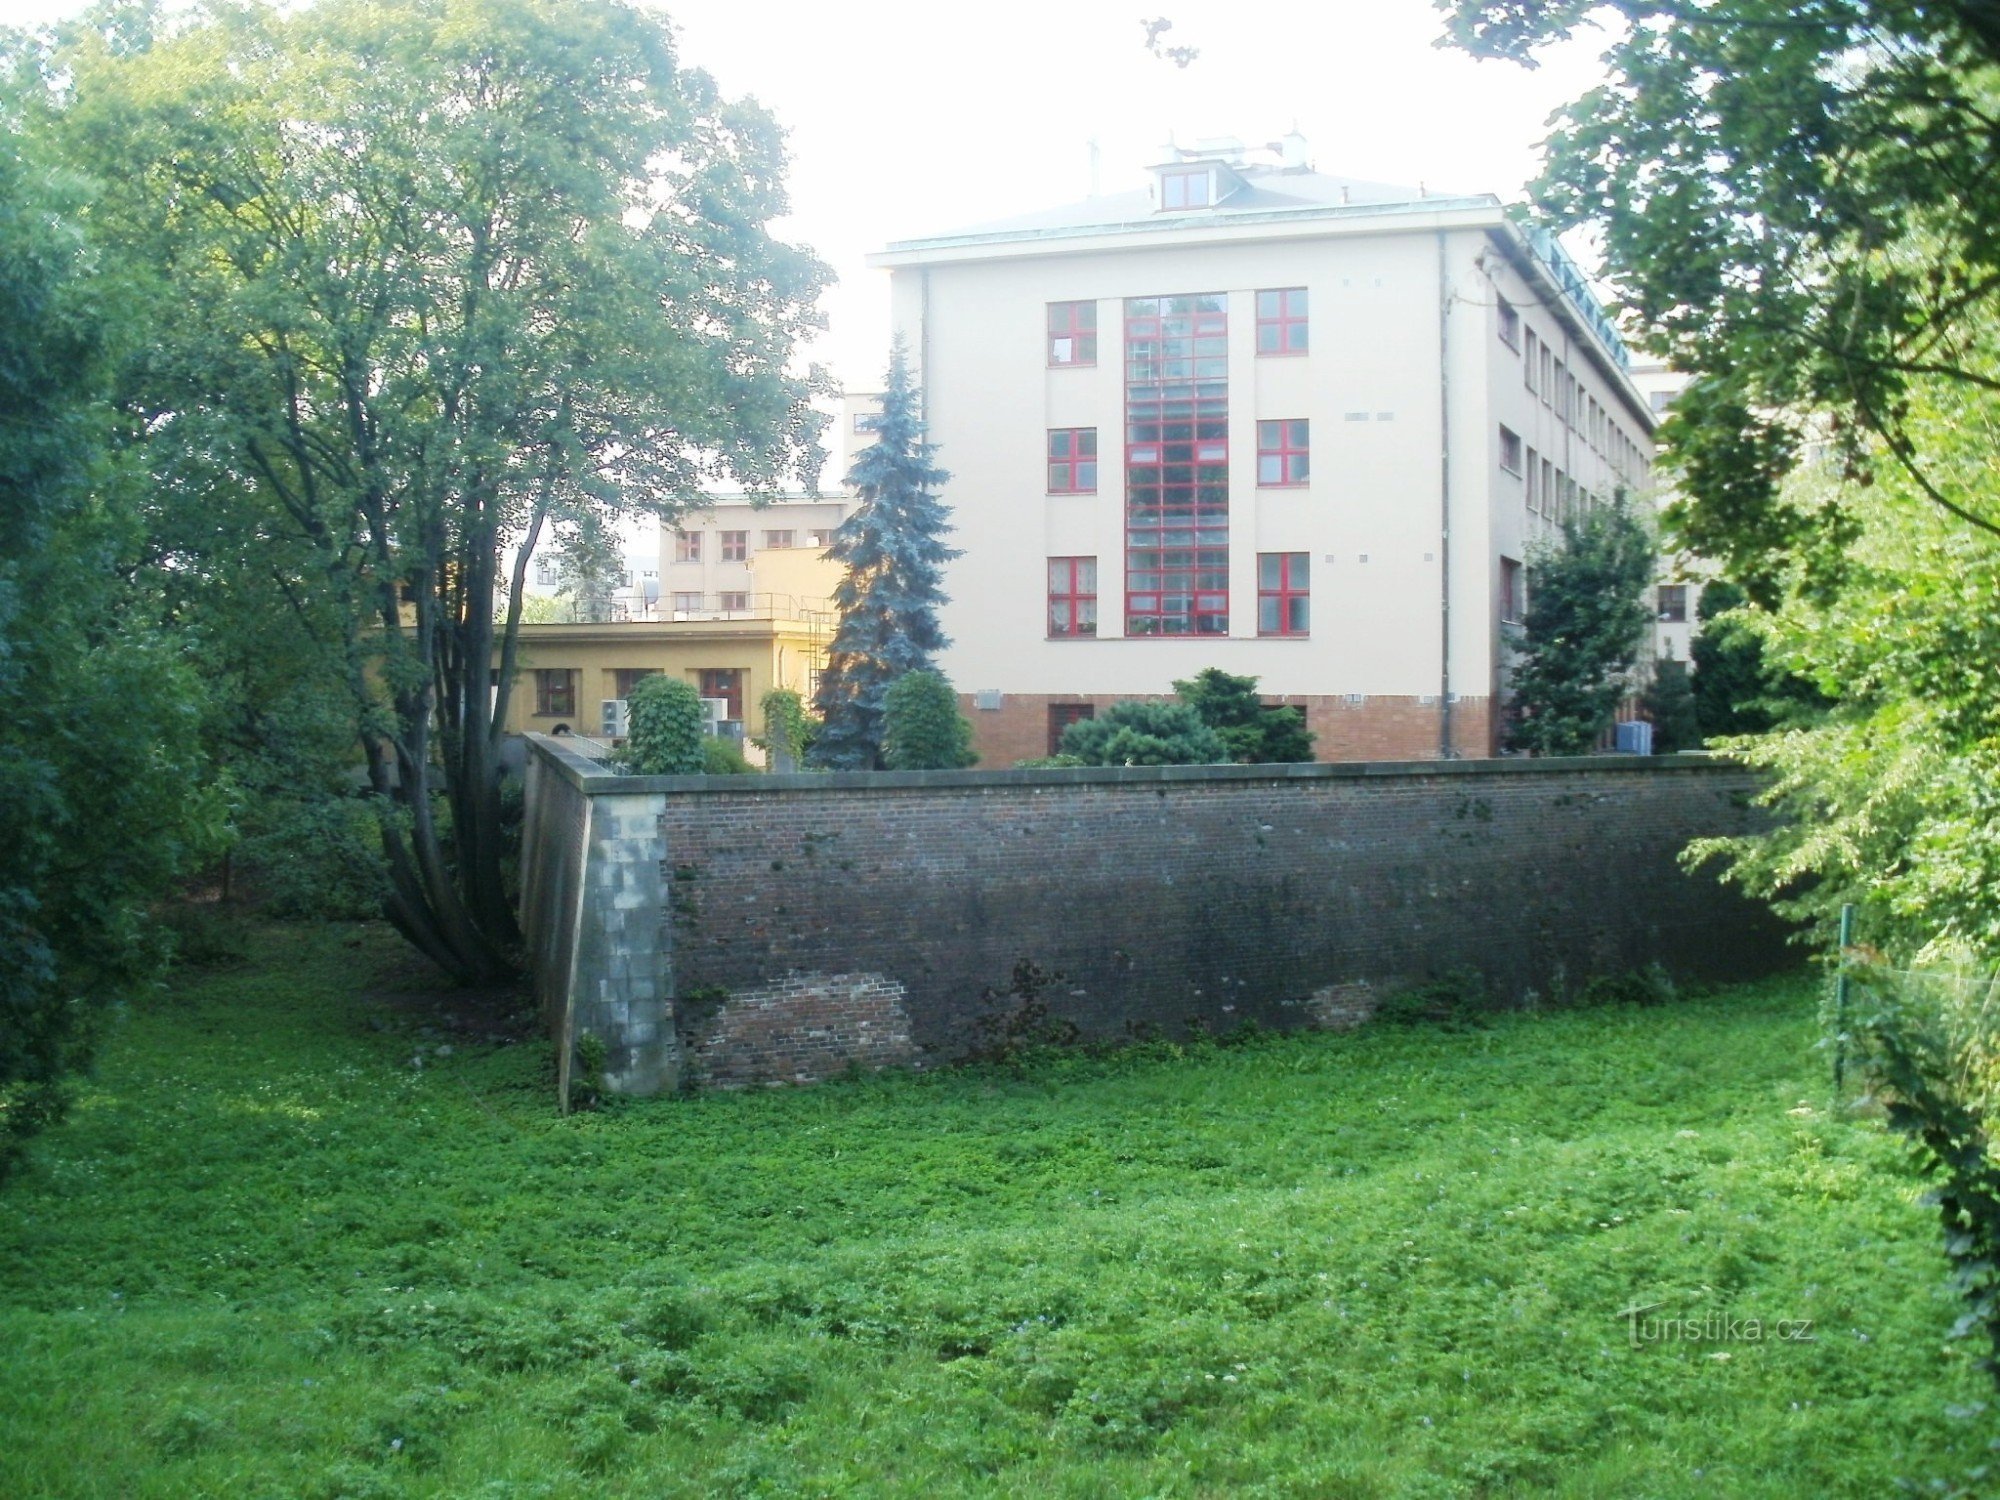 Pháo đài Hradec, những công sự còn sót lại - Ravelin